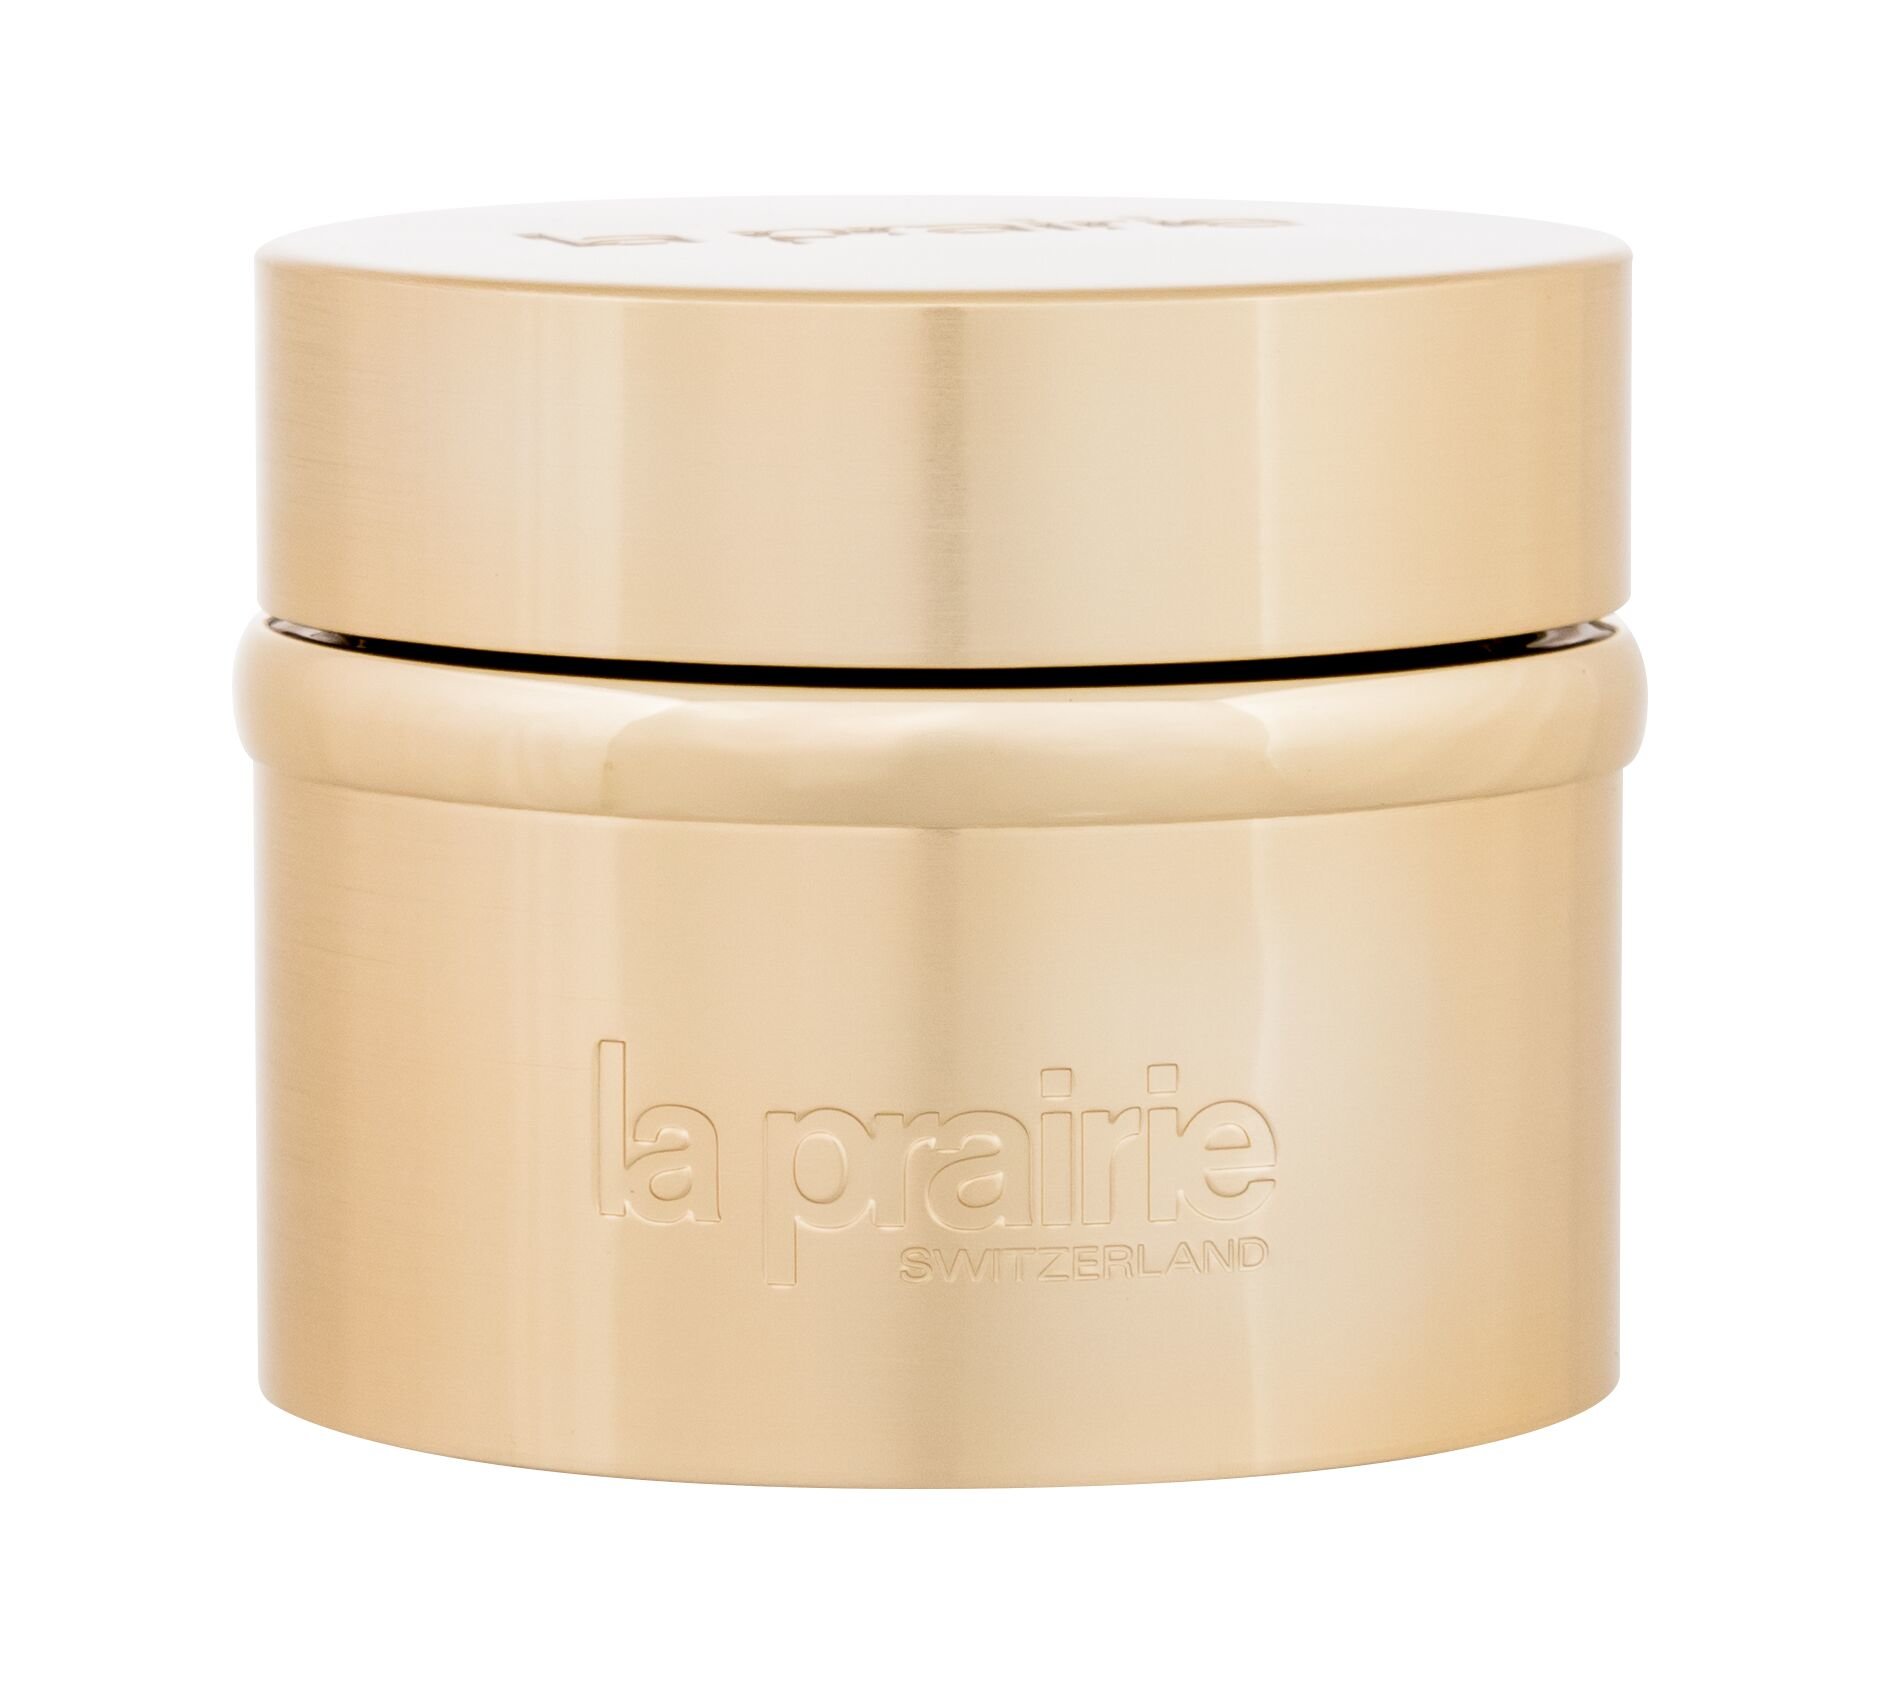 La Prairie Pure Gold Radiance Eye Cream paakių kremas